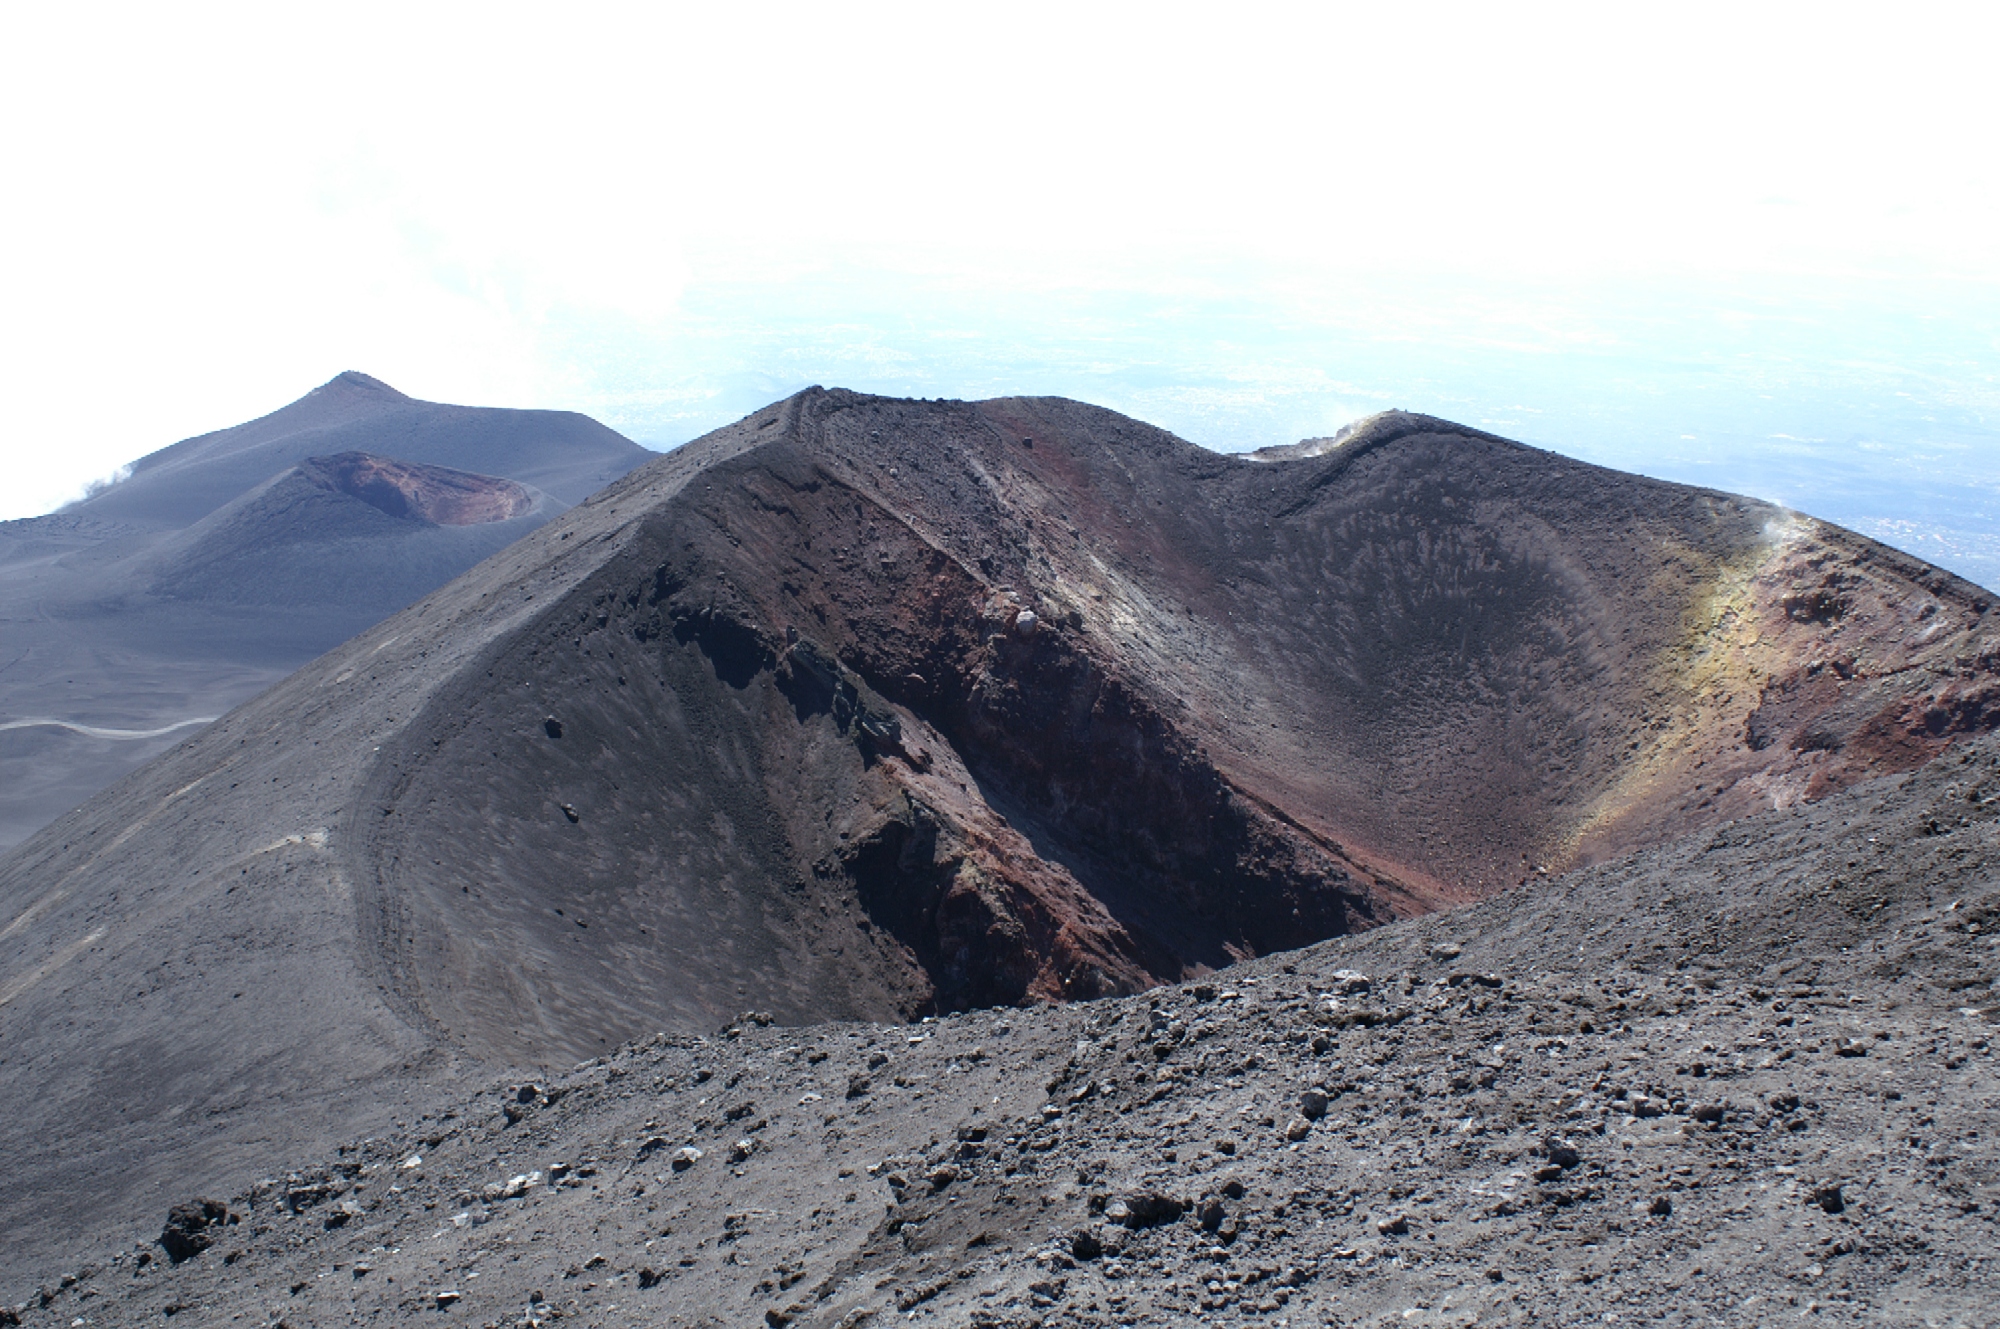 17-VII-2001. Nuevos cráteres se abren en la zona de cumbres, alineados con El Lagheto y La Montañola. Cota 2700